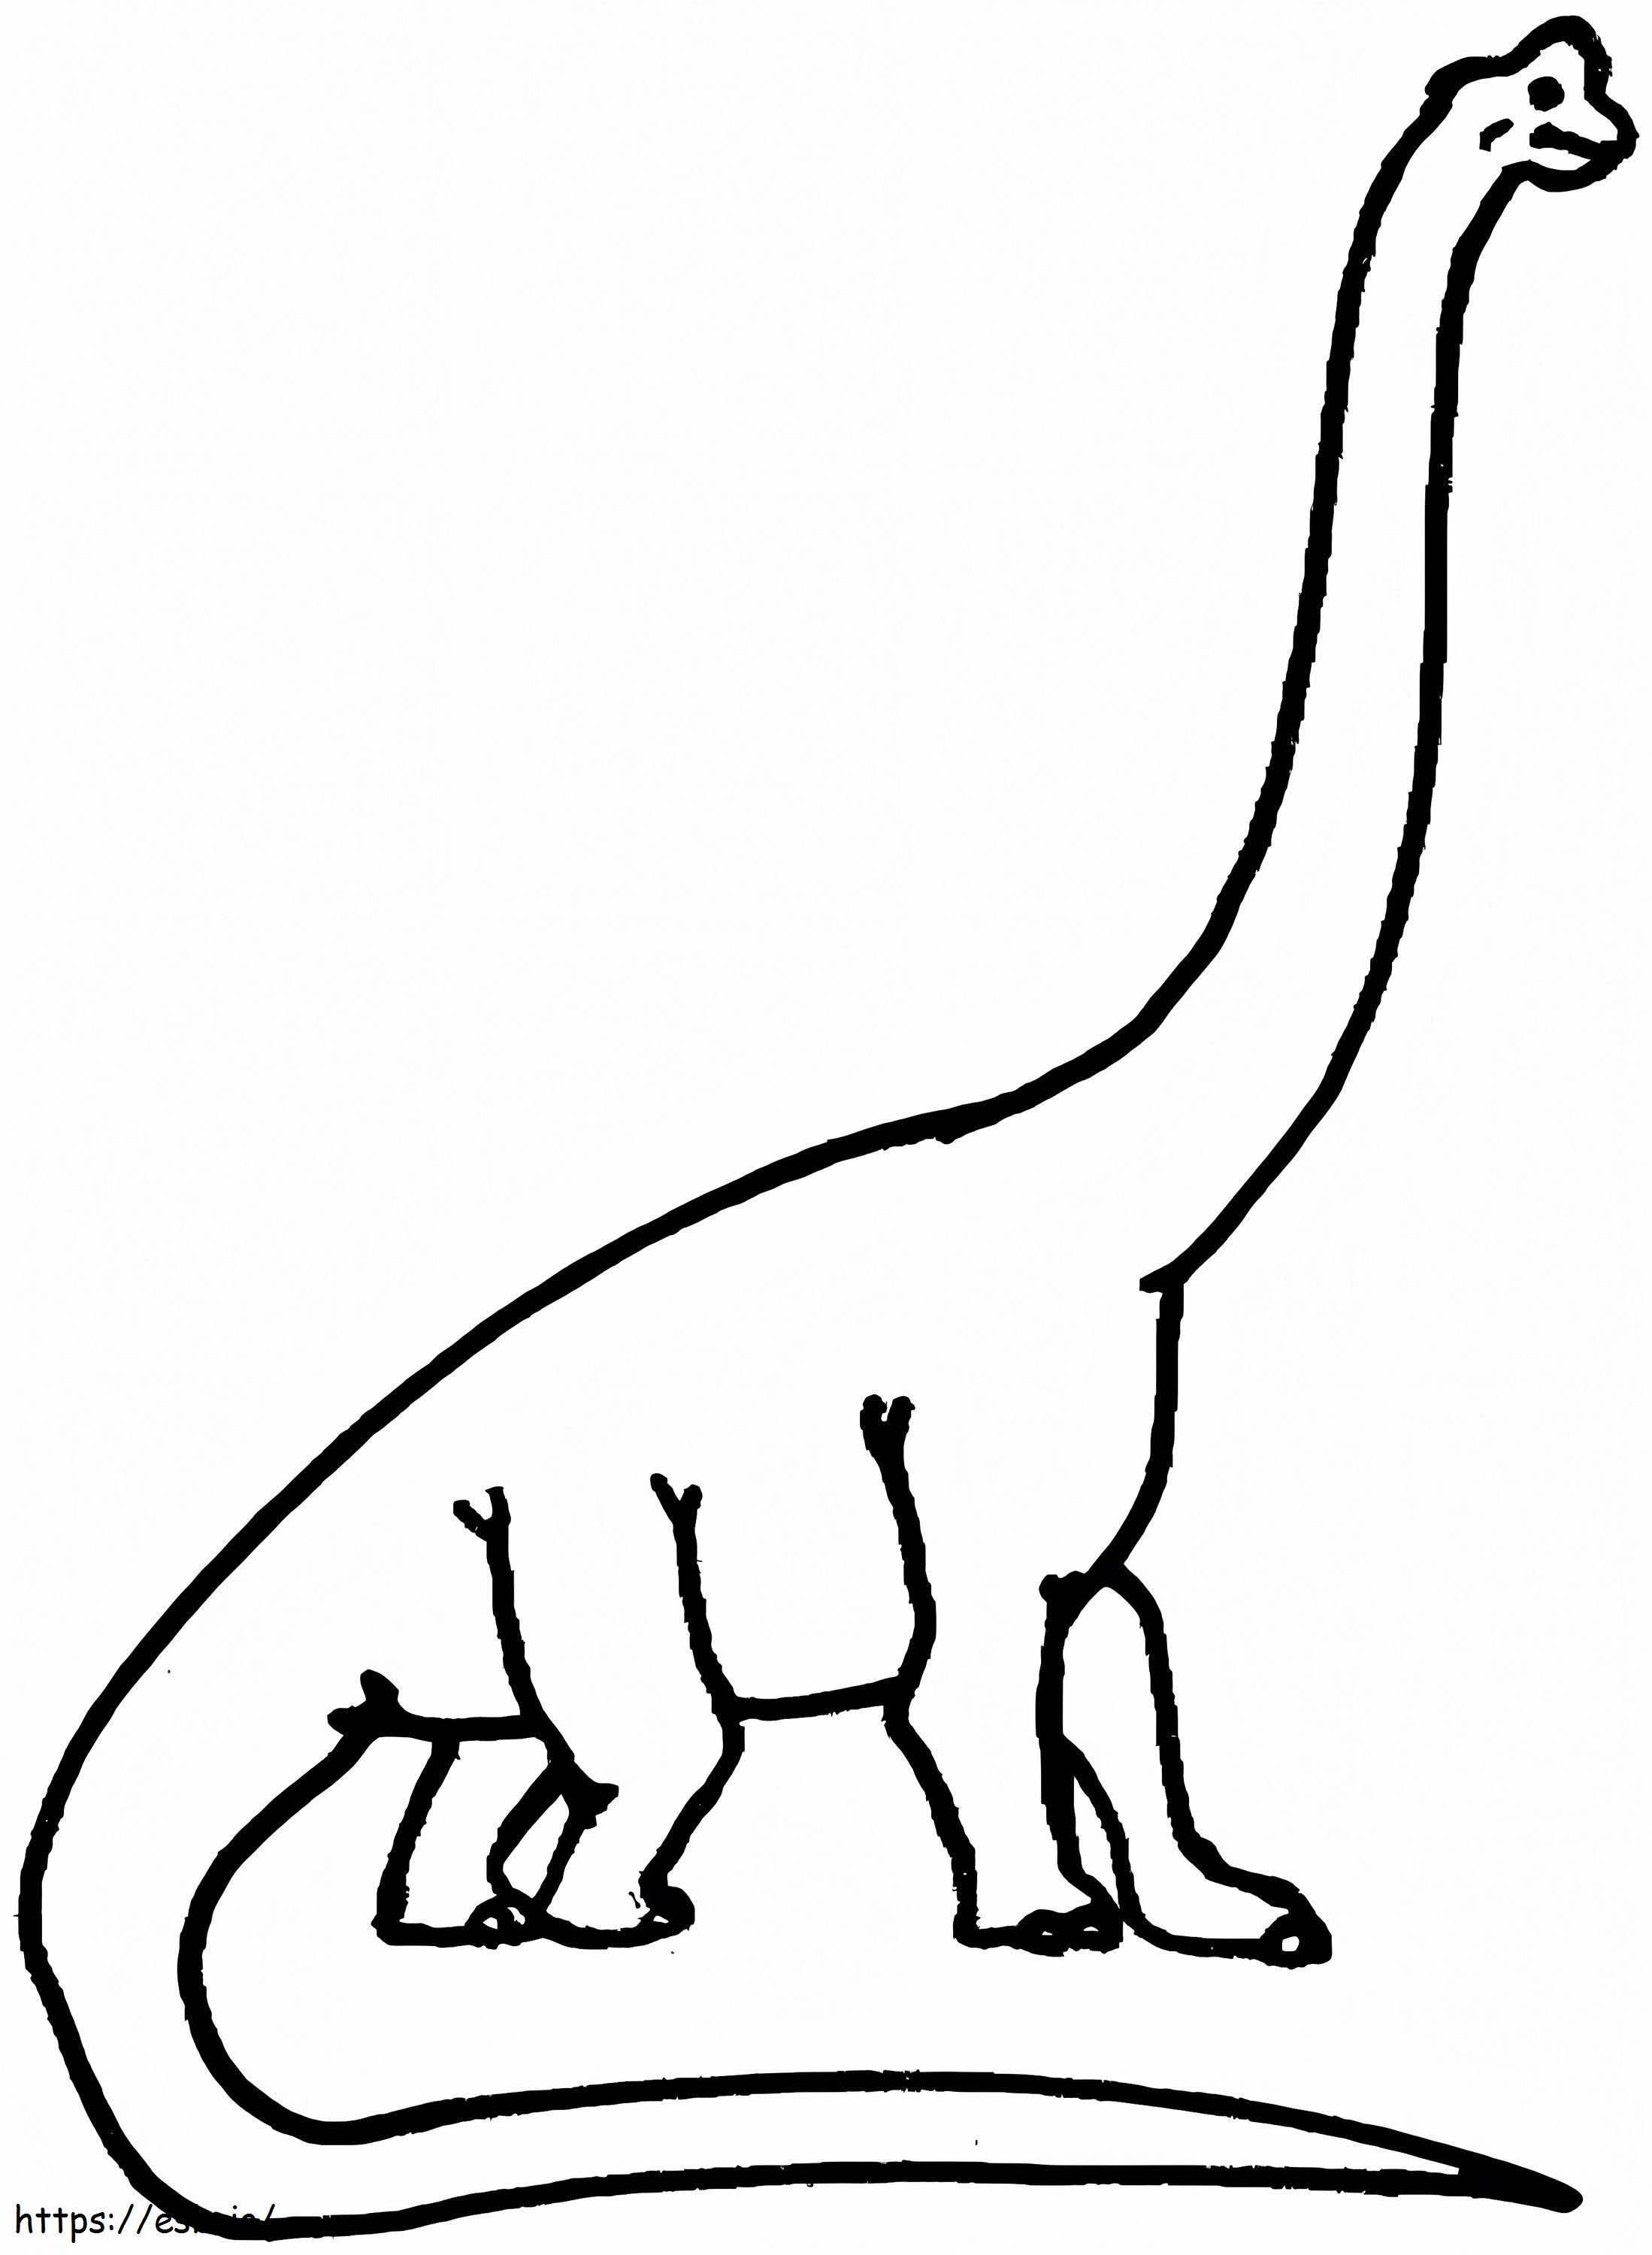 Coloriage Brachiosaure à imprimer dessin